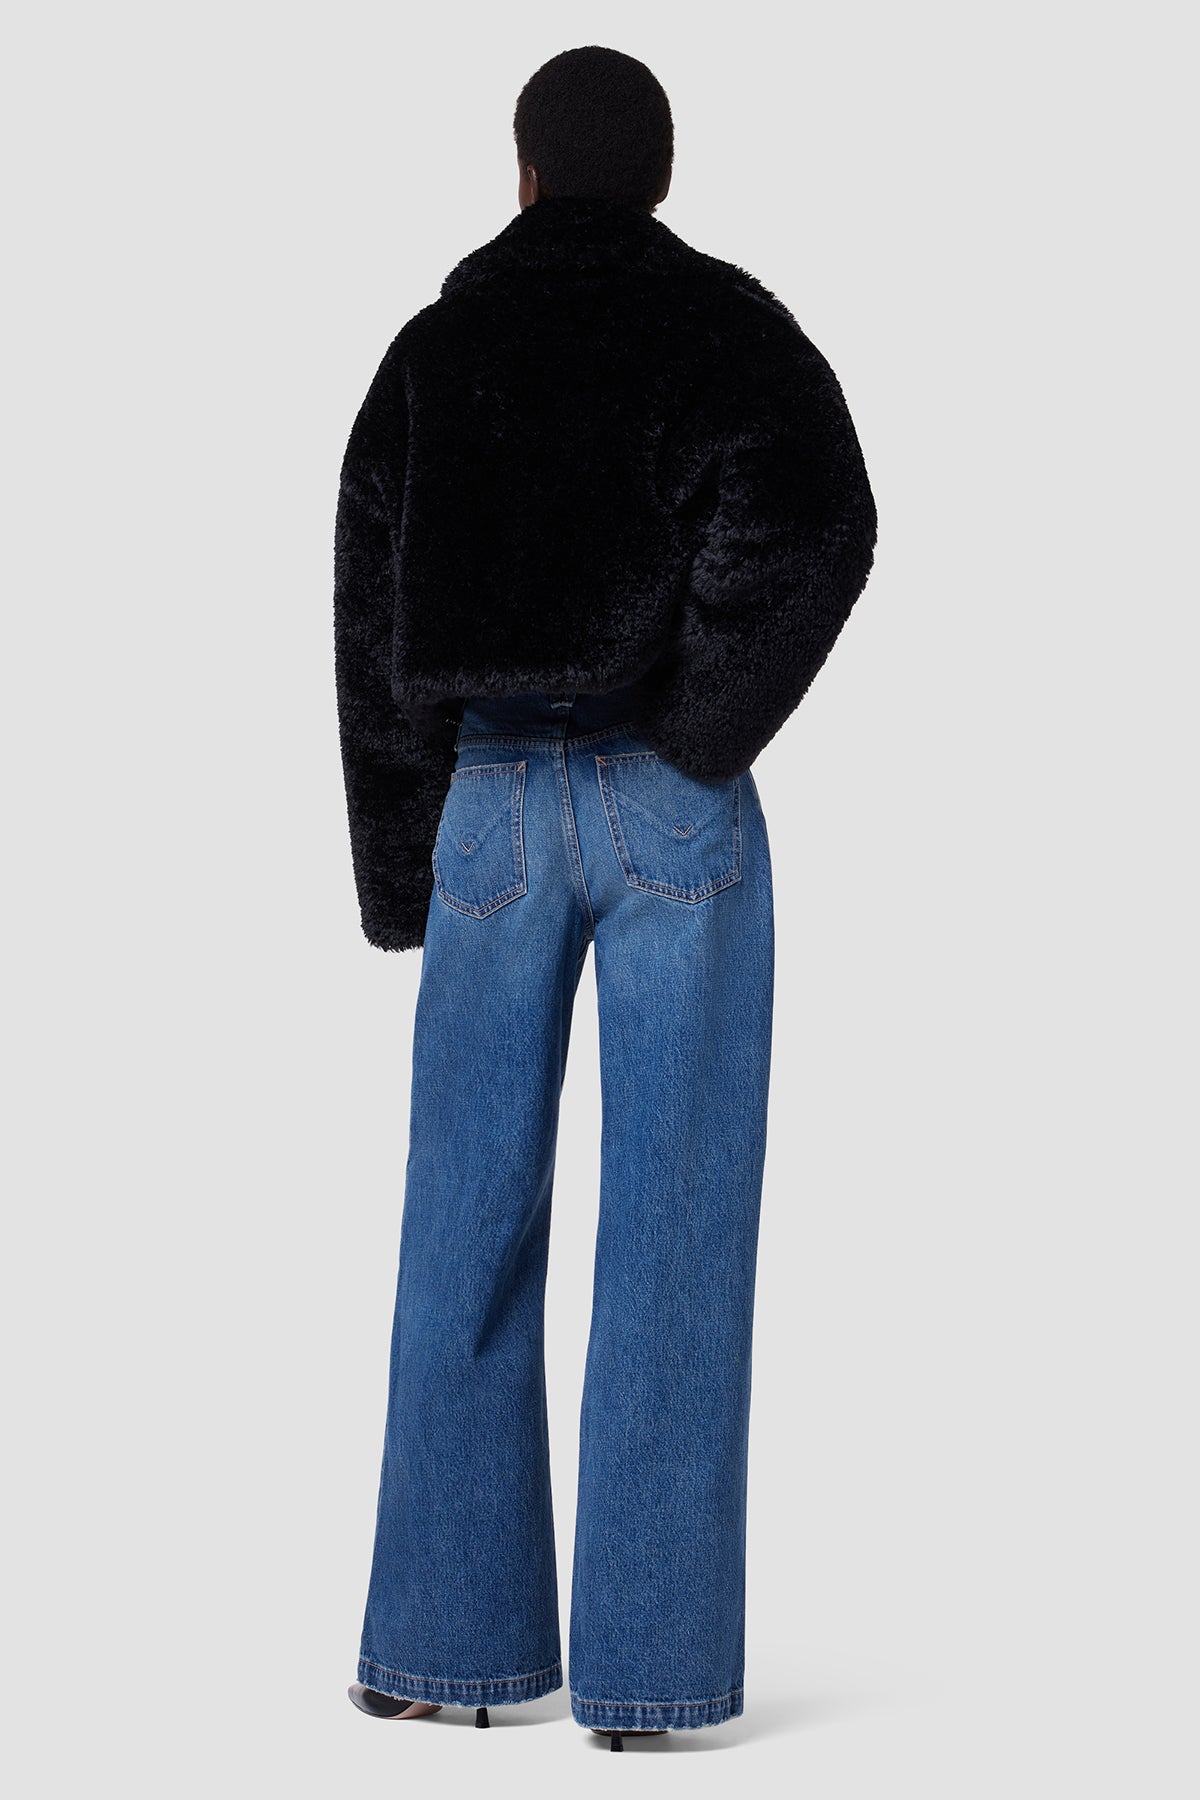 Cropped Plush Teddy Fur Jacket